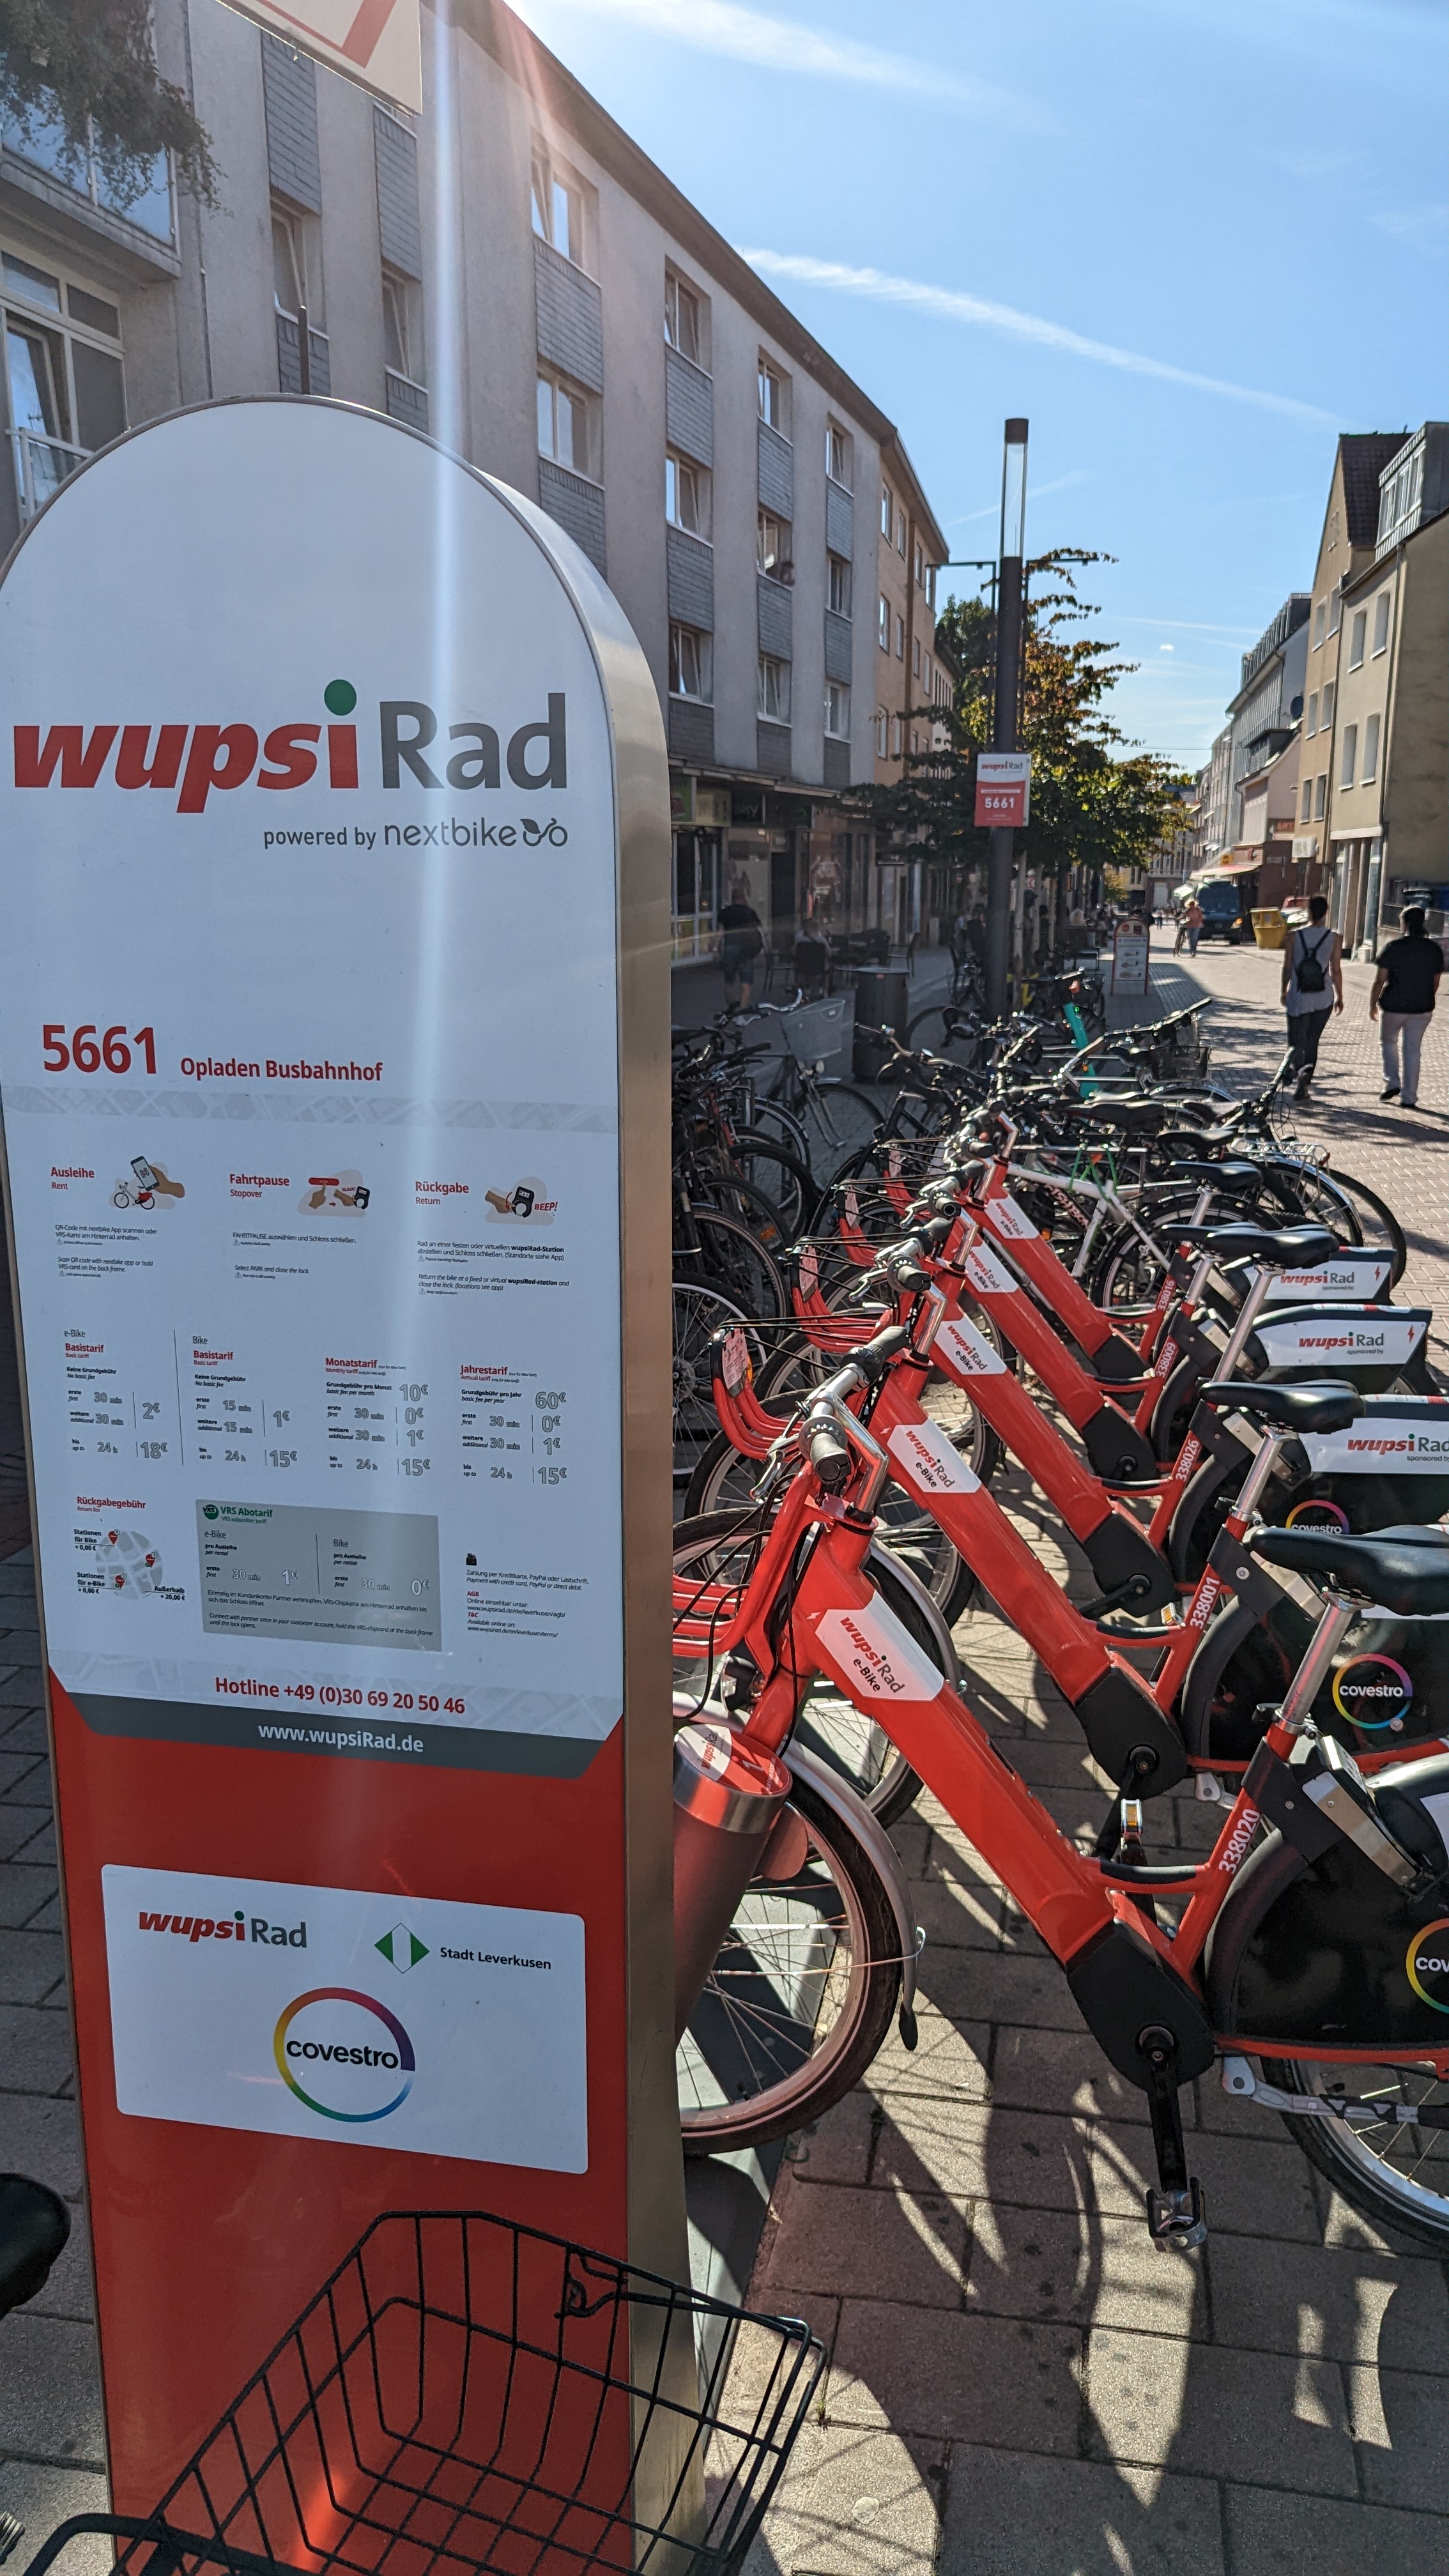 wupsi-Rad-Abstellplatz am Busbahnhof Opladen: viele Fahrräder stehen zur Nutzung bereit.